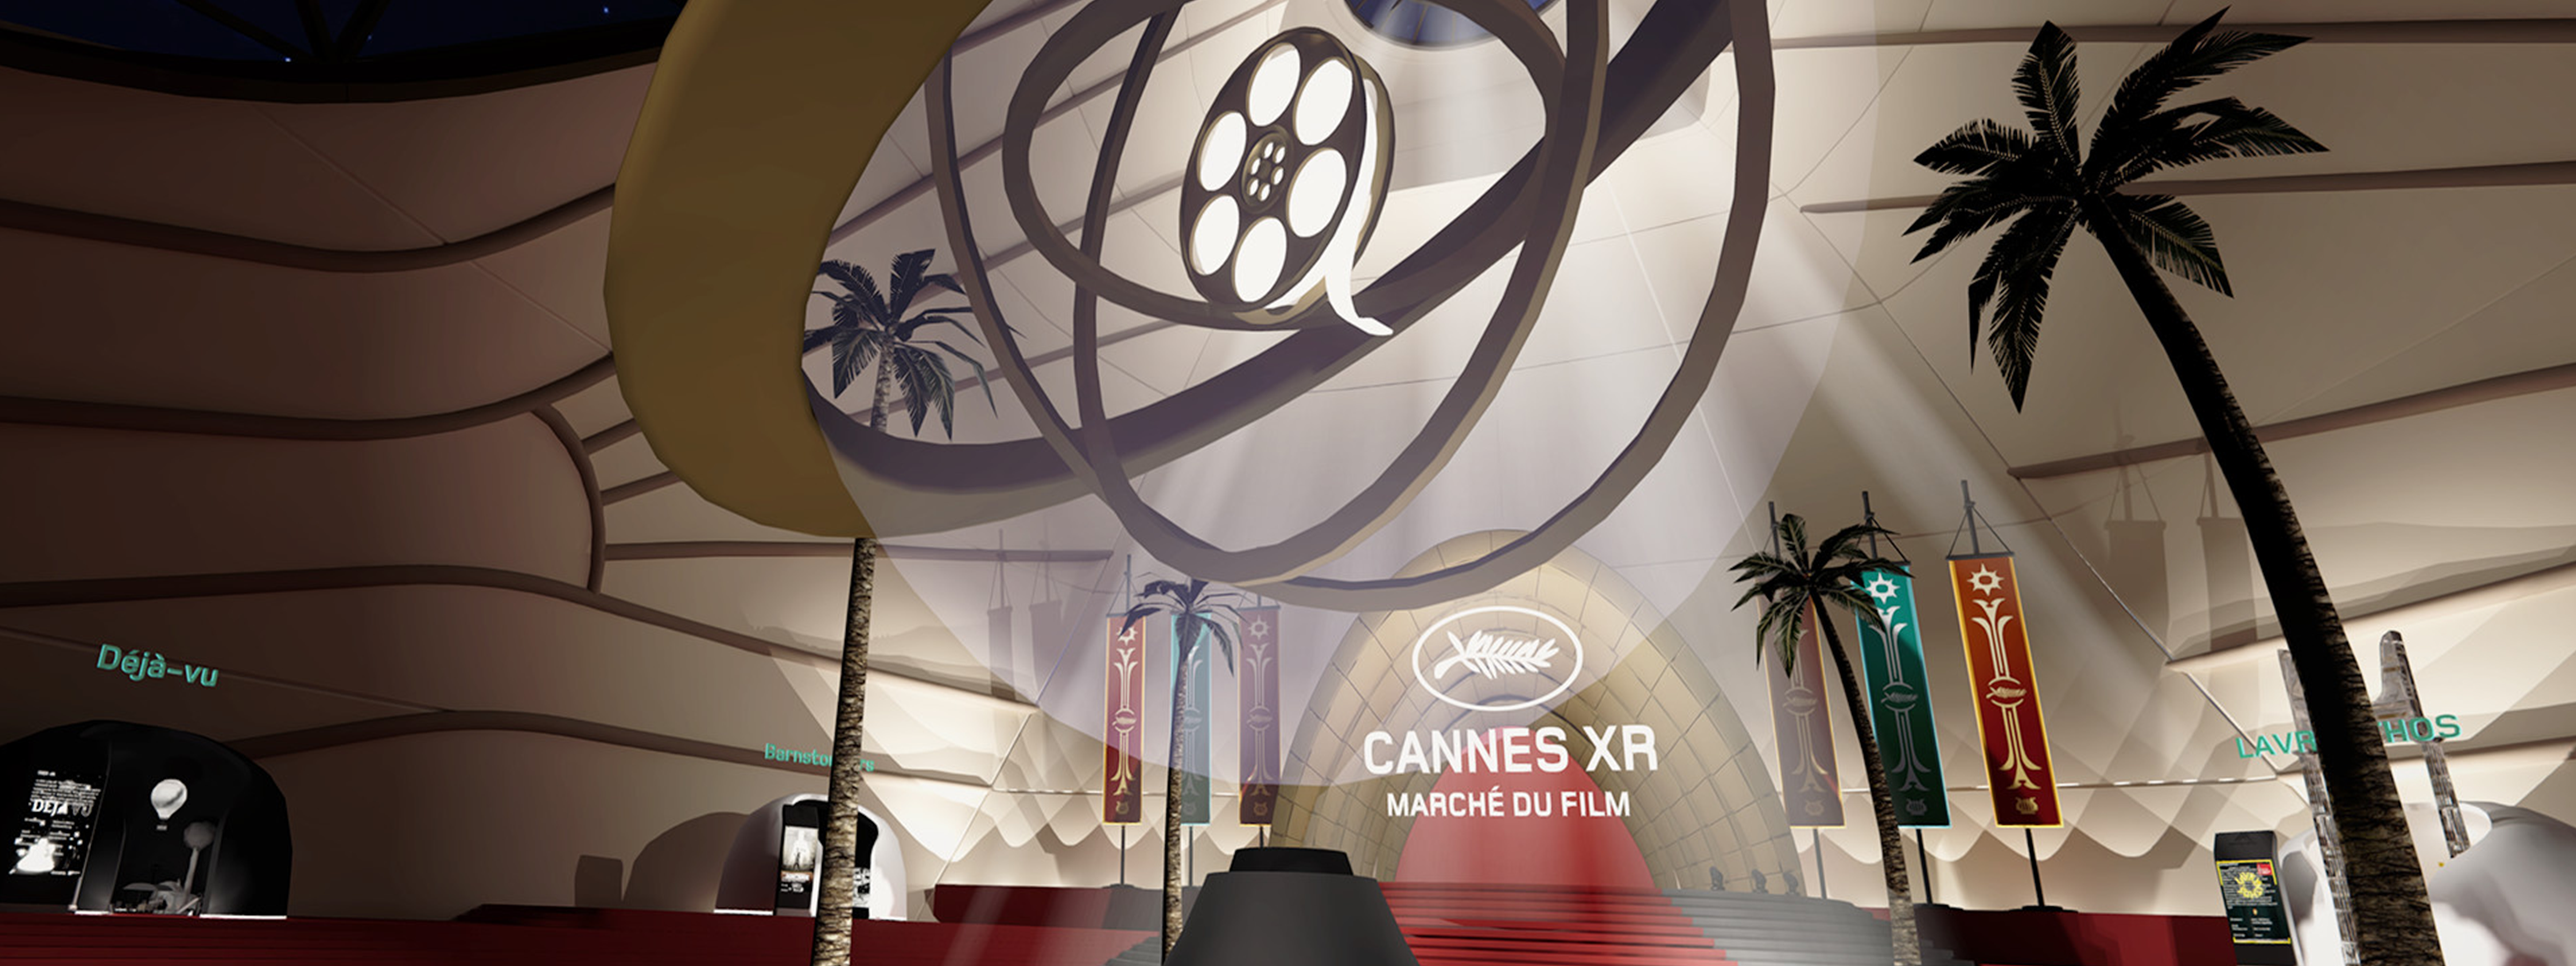 Cannes XR - Marché du film